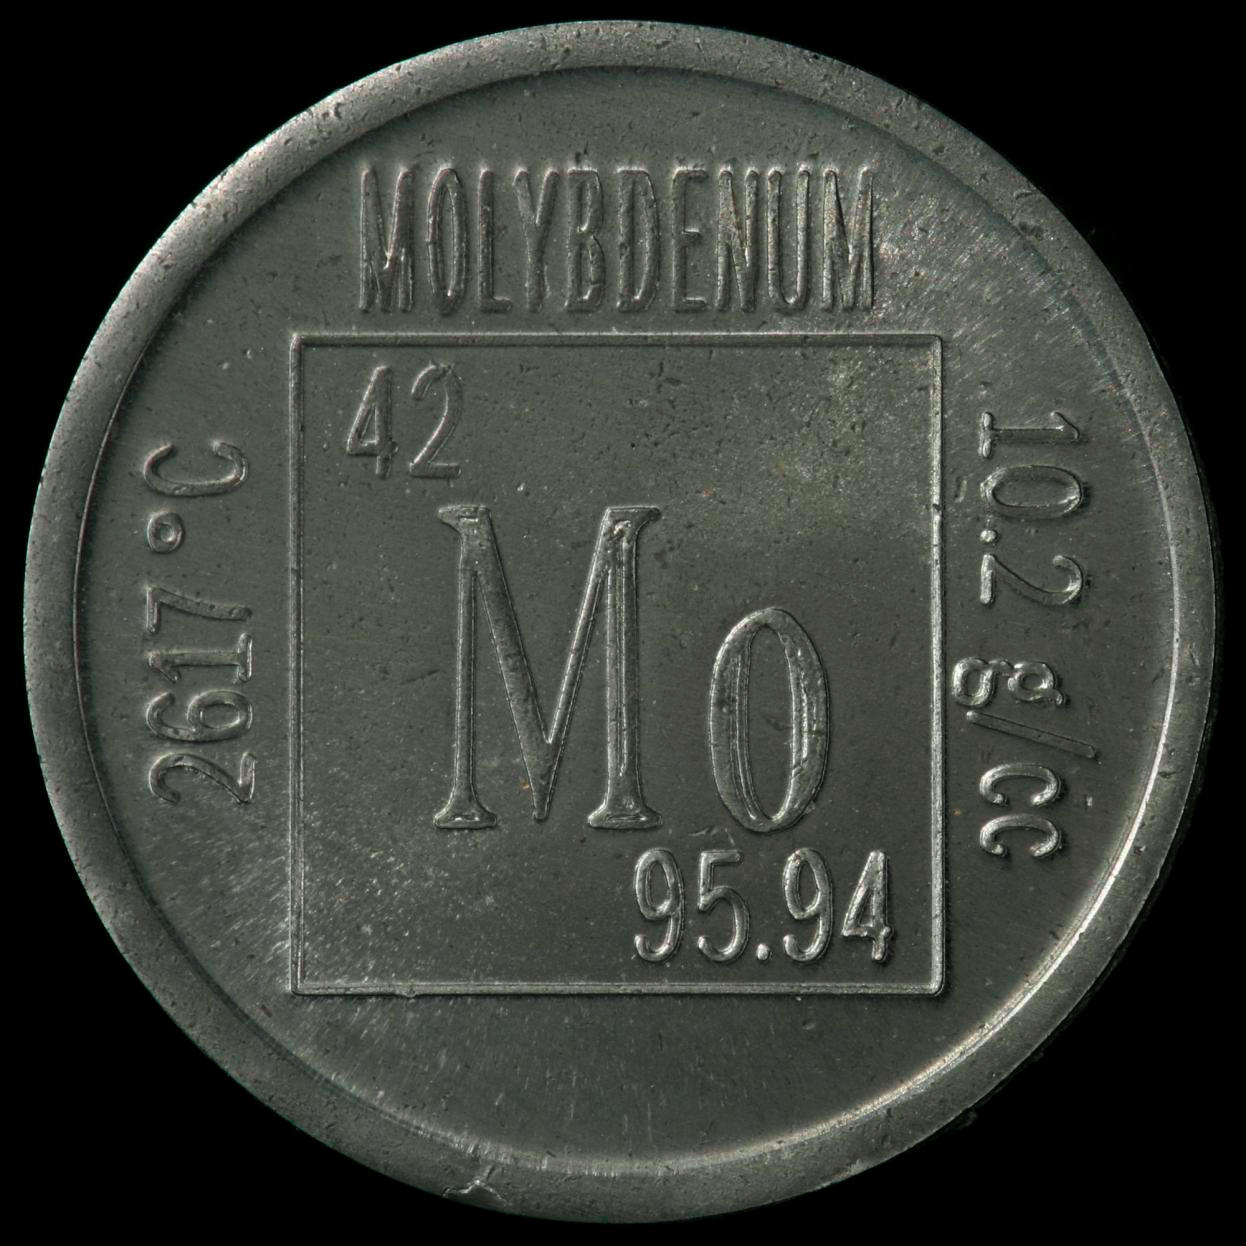 Molybdenum Element coin